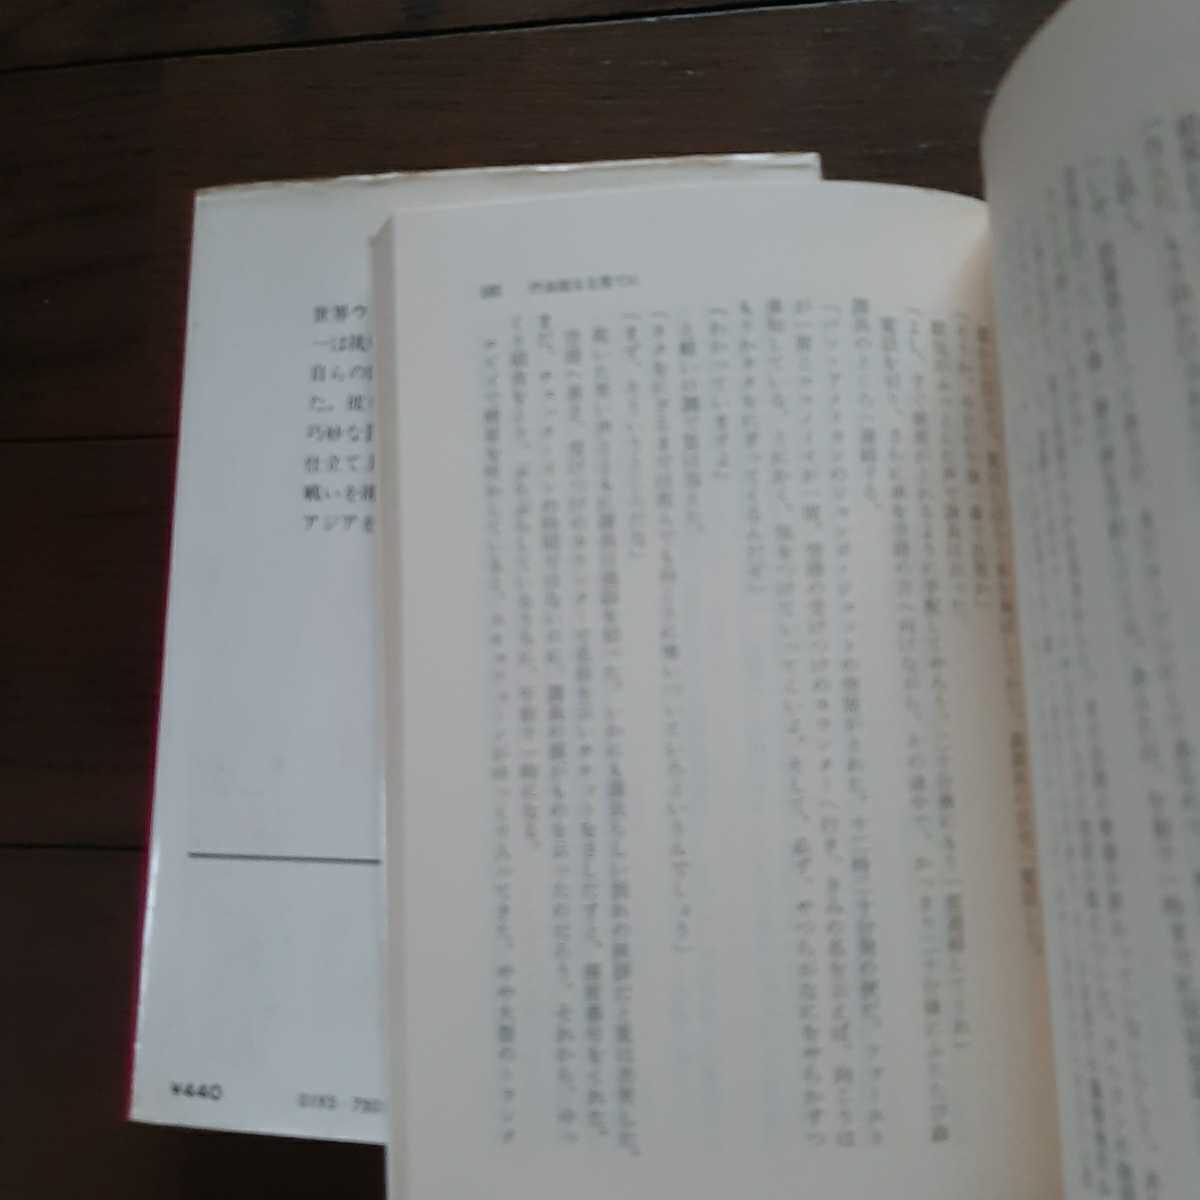  Ikushima Jiro библиотека 2 шт. 